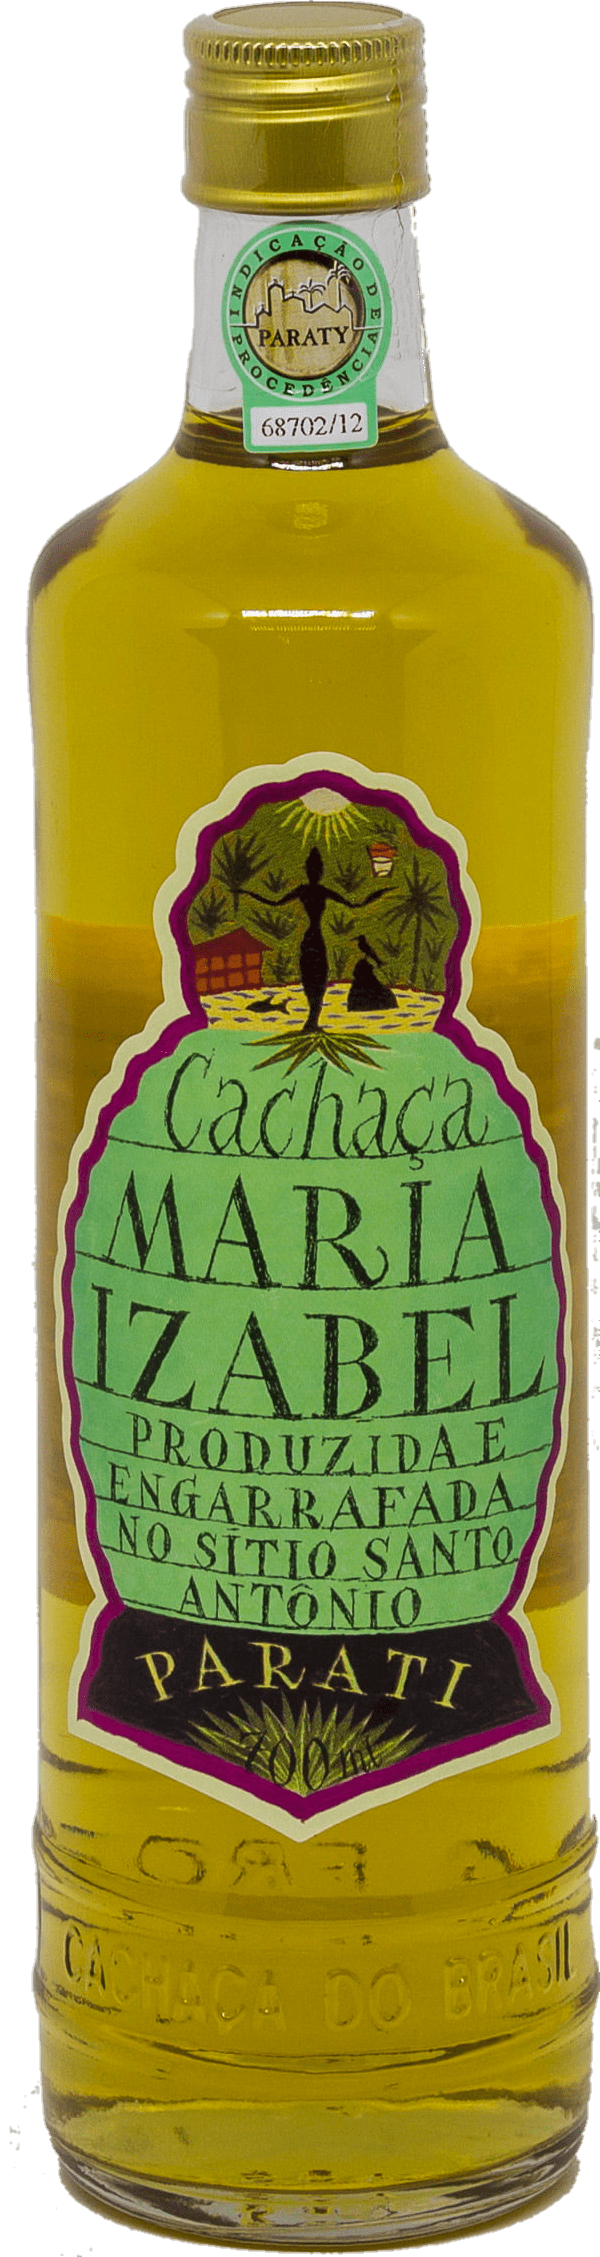 Cachaça Maria Izabel Ouro - Carvalho - 700 ml